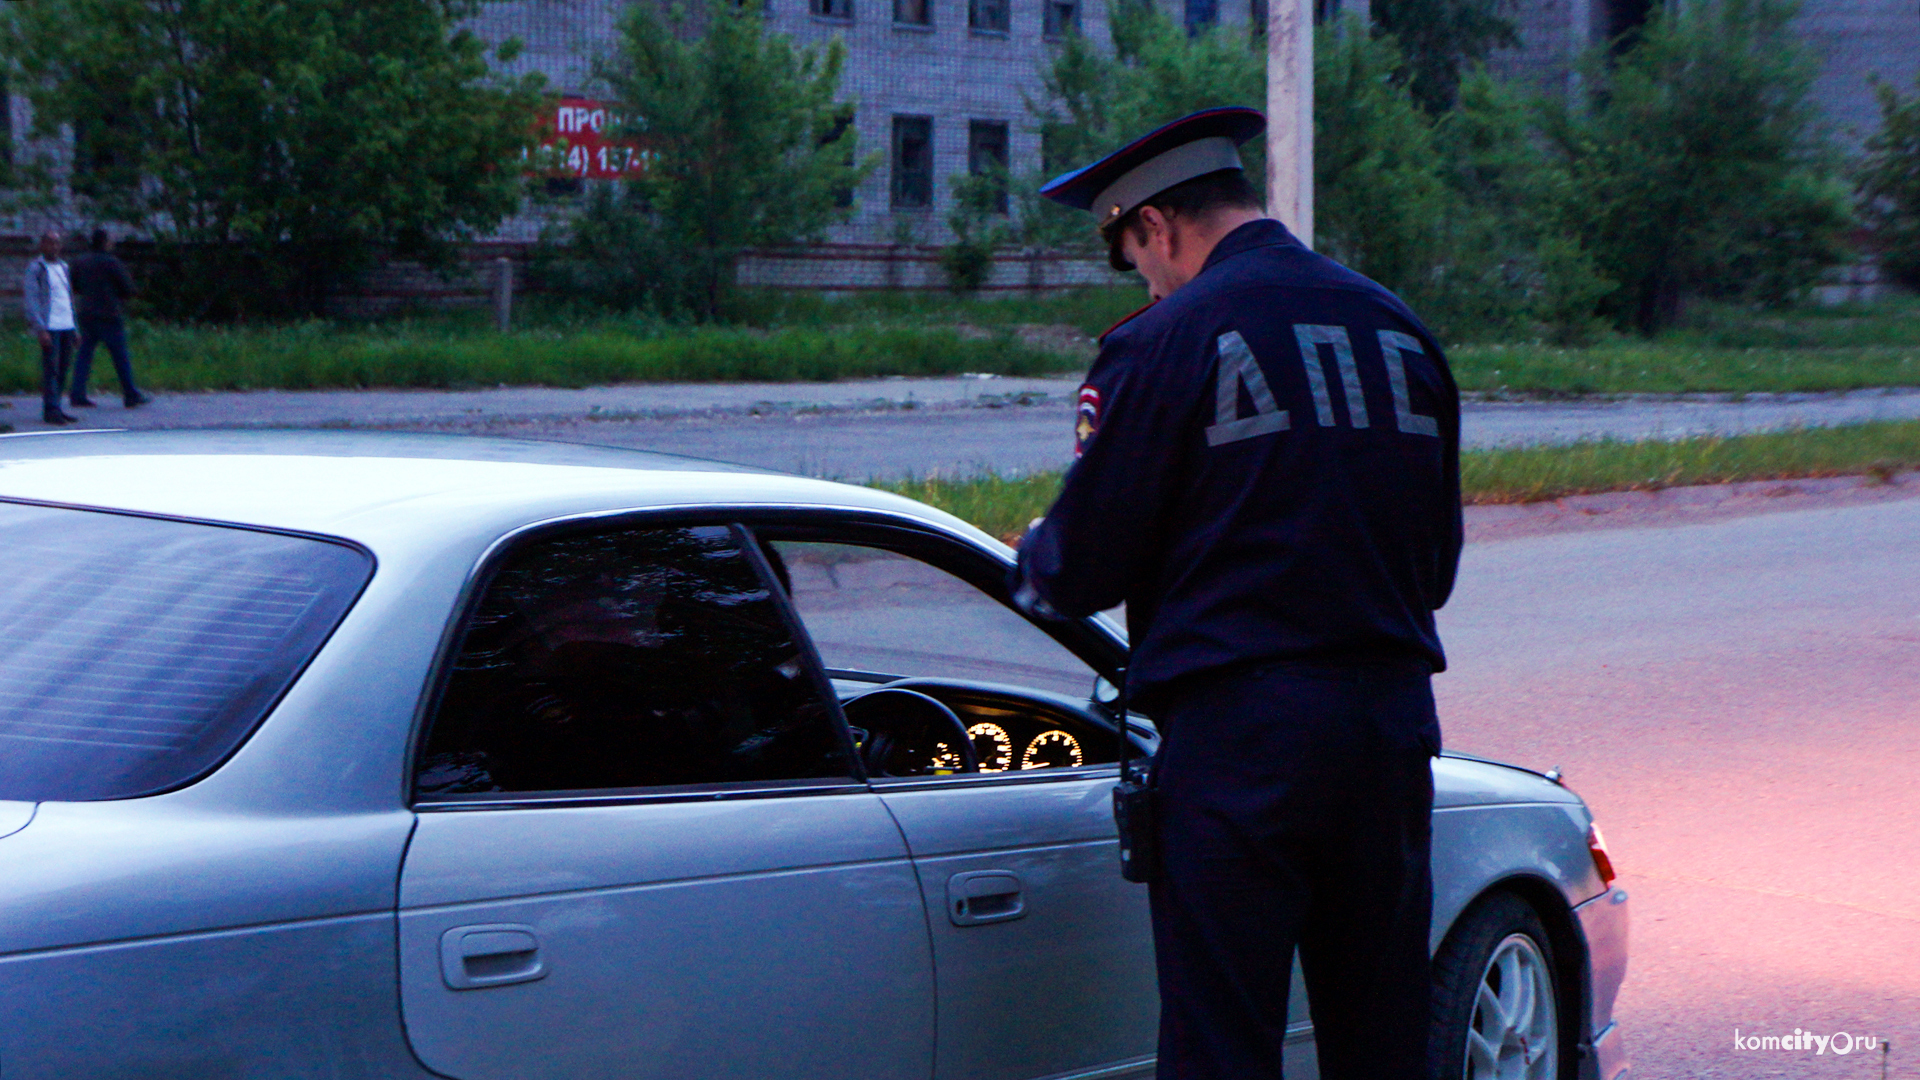 До 16 октября в Комсомольском районе будут усиленно ловить пьяных водителей